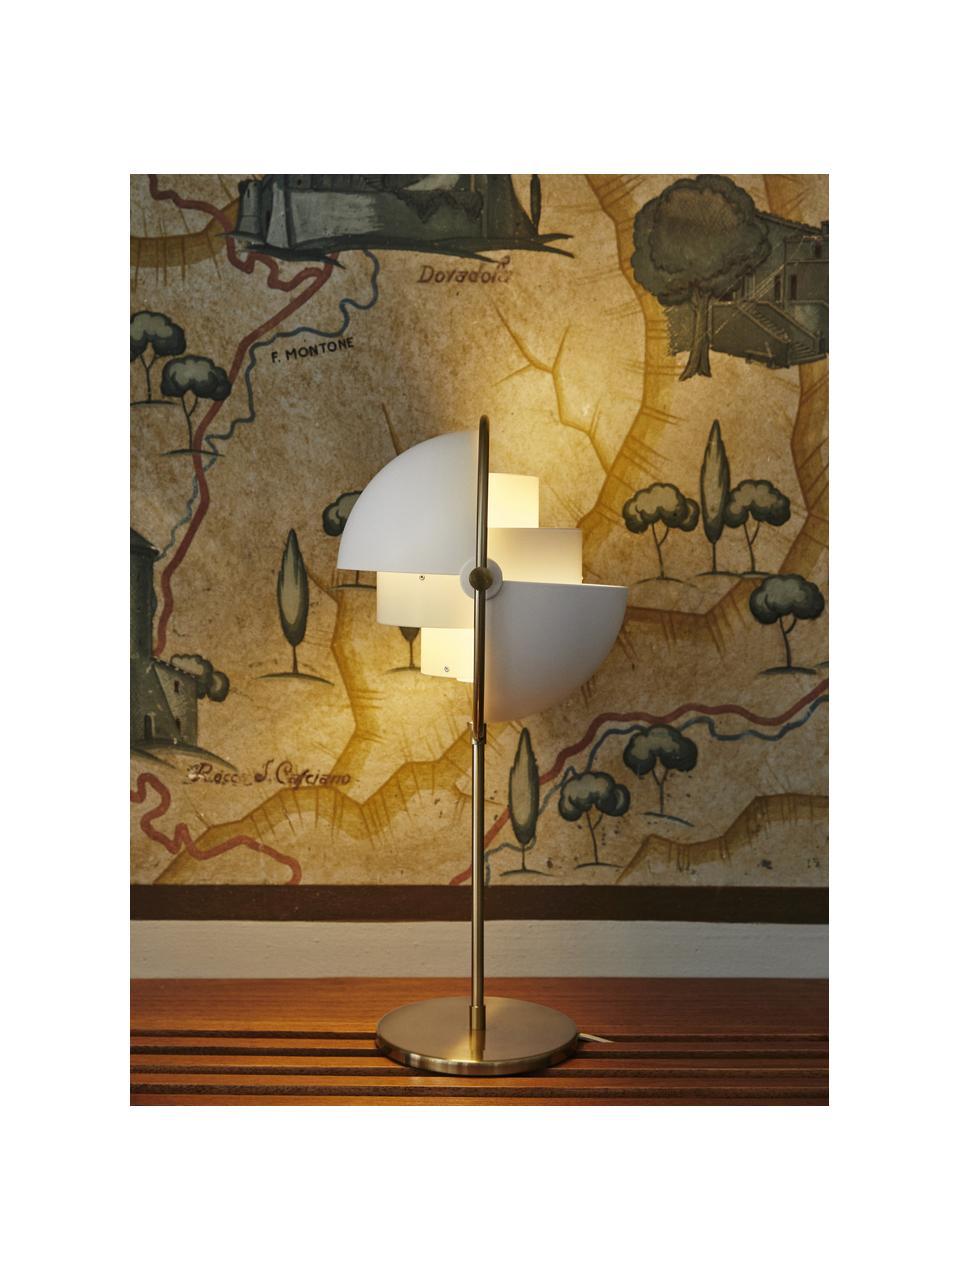 Lampada da tavolo orientabile grande Multi-Lite, Alluminio rivestito, Bianco opaco, dorato opaco, Ø 24 x Alt. 50 cm